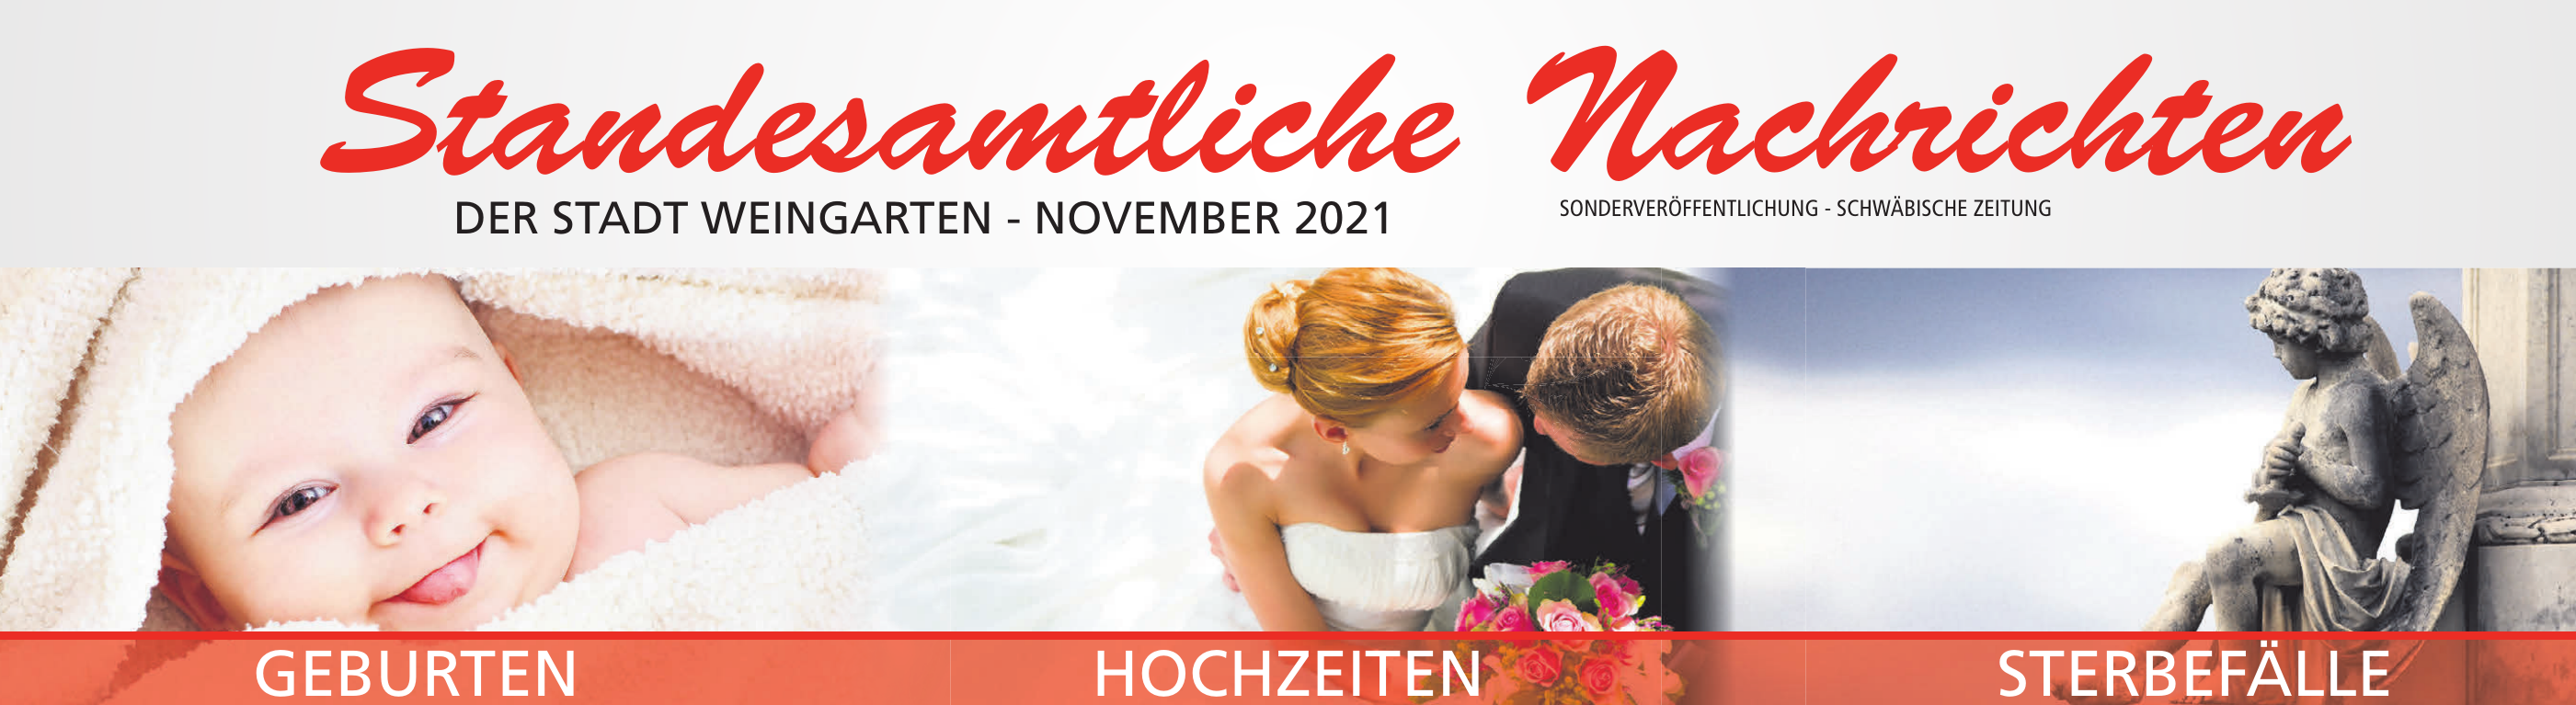 Standesamtliche Nachrichten der Stadt Weingarten - November 2021 Image 1